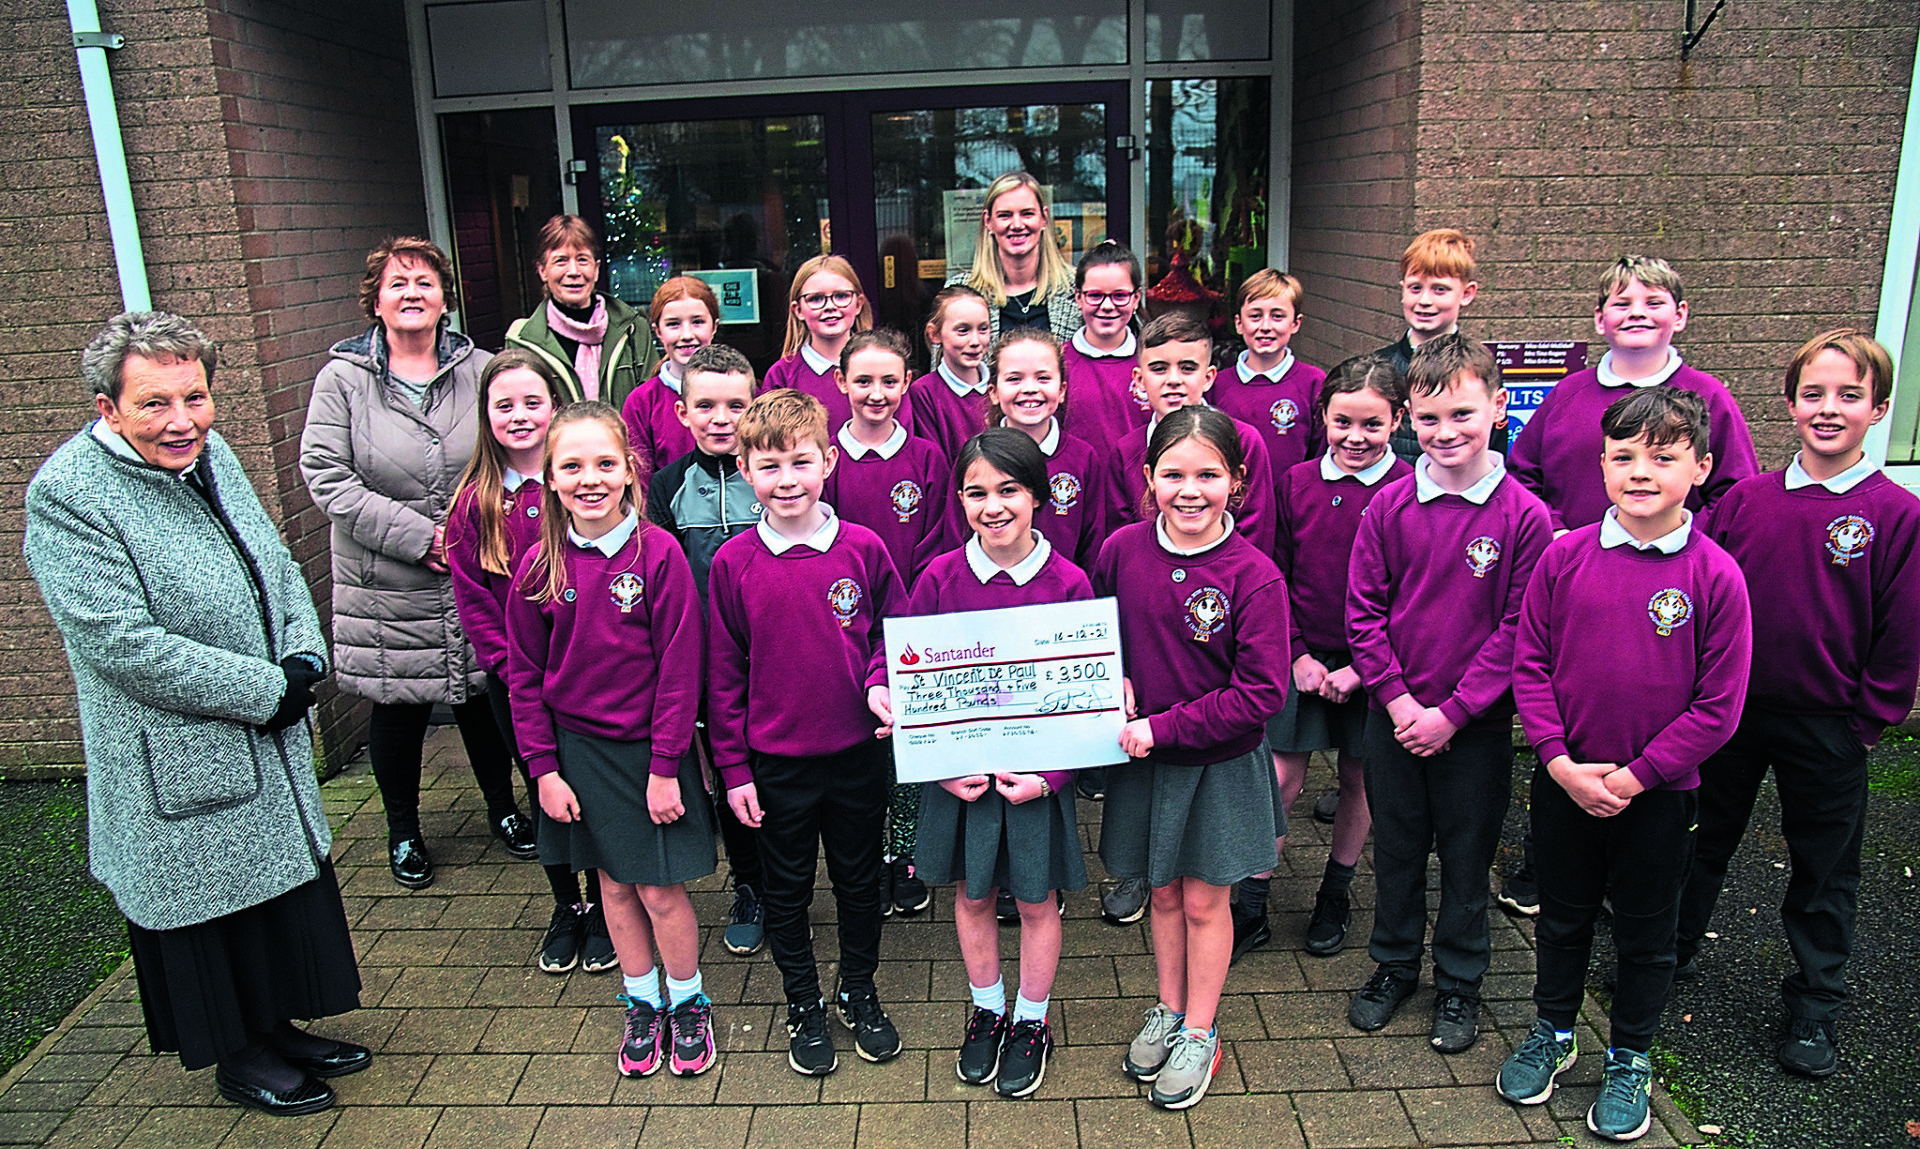 Charitable Carrickmore children raise £3,500